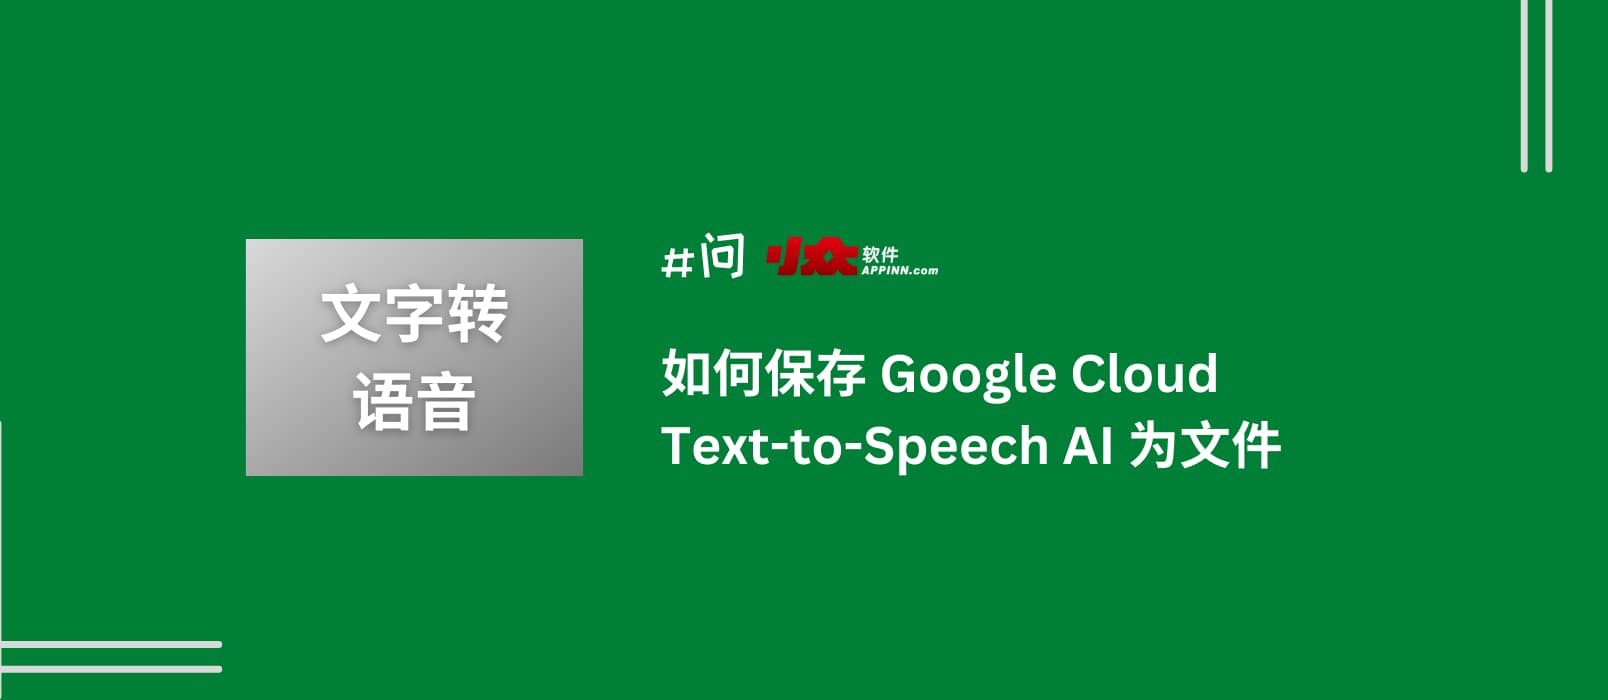 如何保存 Google Cloud Text-to-Speech AI 文字转语音服务为音频文件